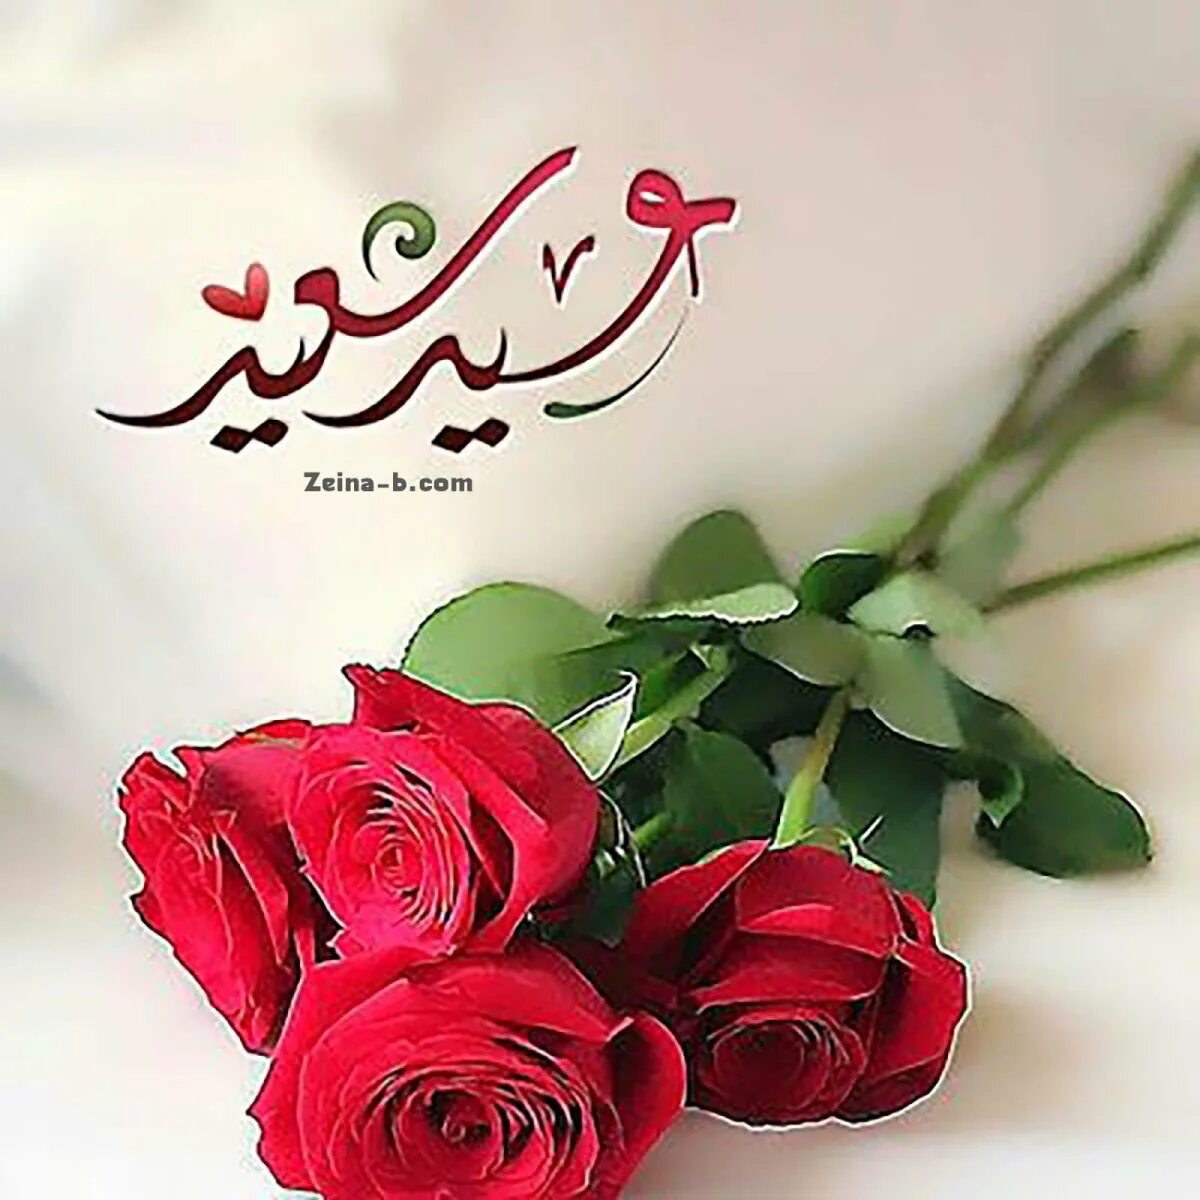 Мусульманские пожелания. Красивые мусульманские пожелания. Поздравления на арабском языке. Мусульманские цветы.